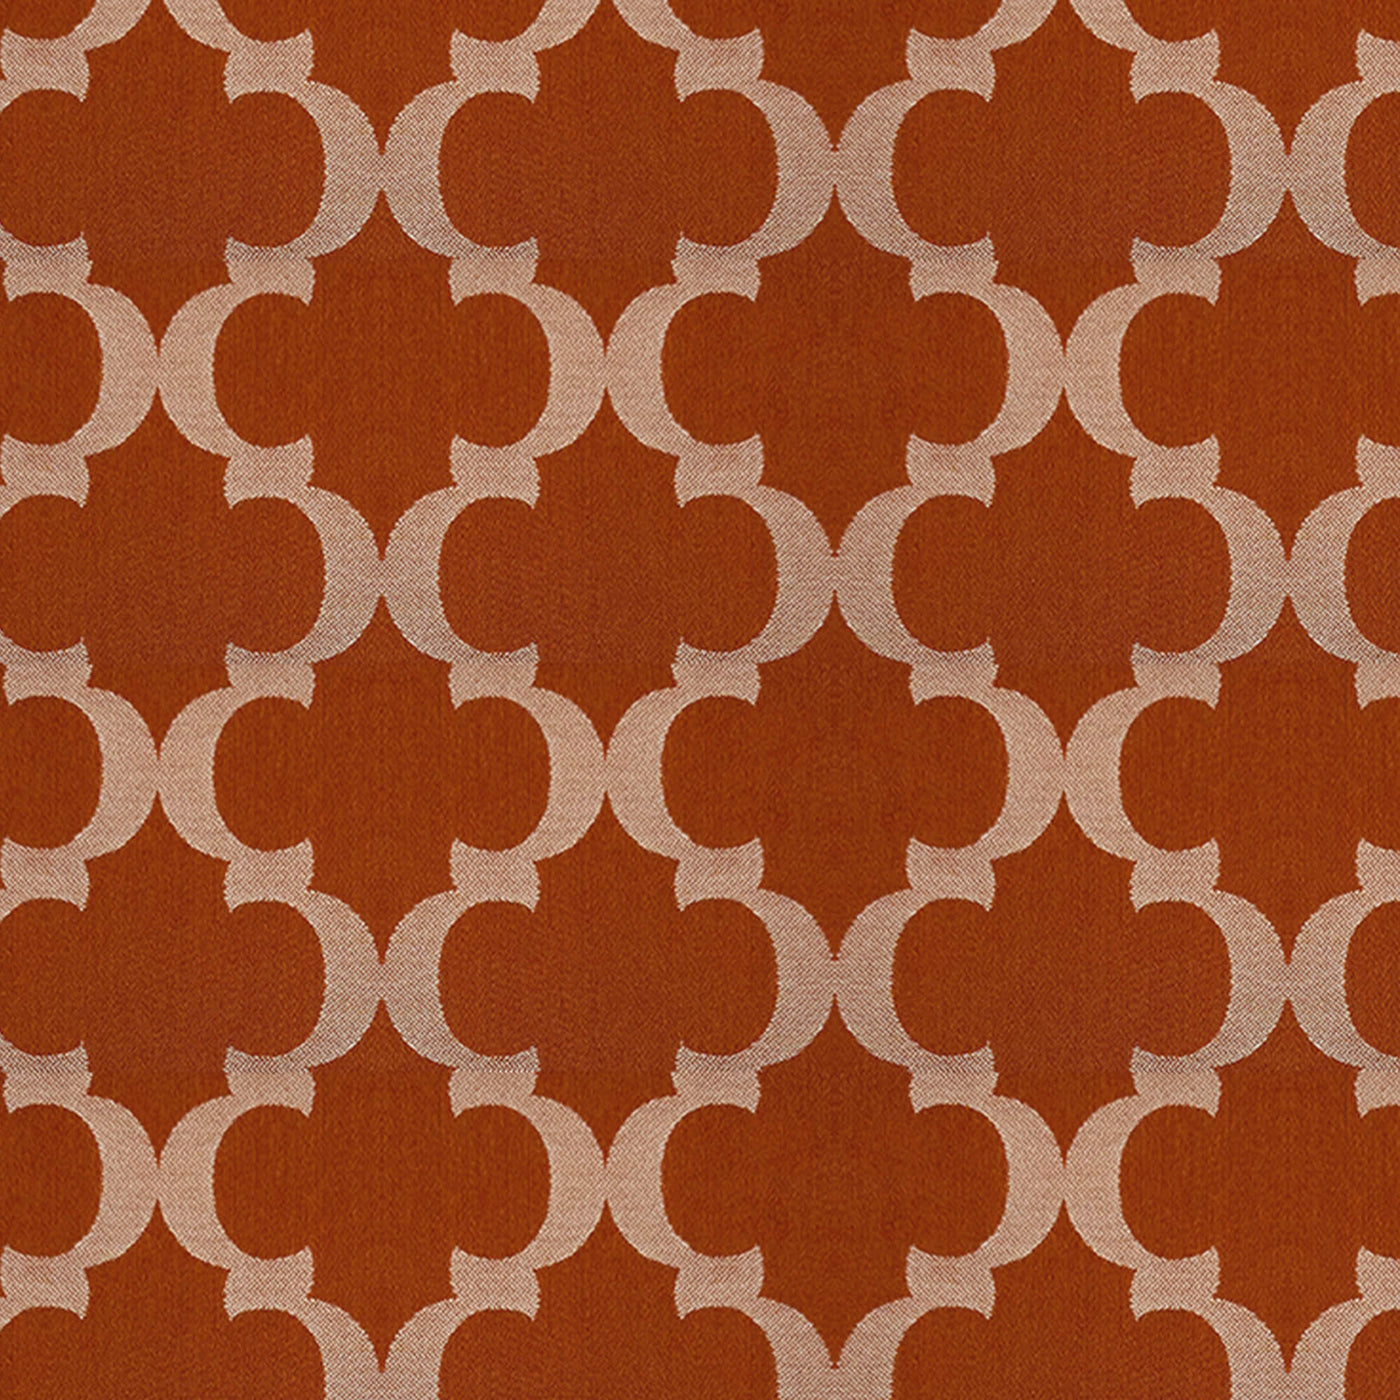 PENGI Outdoor Curtains Waterproof - Vigor Orange